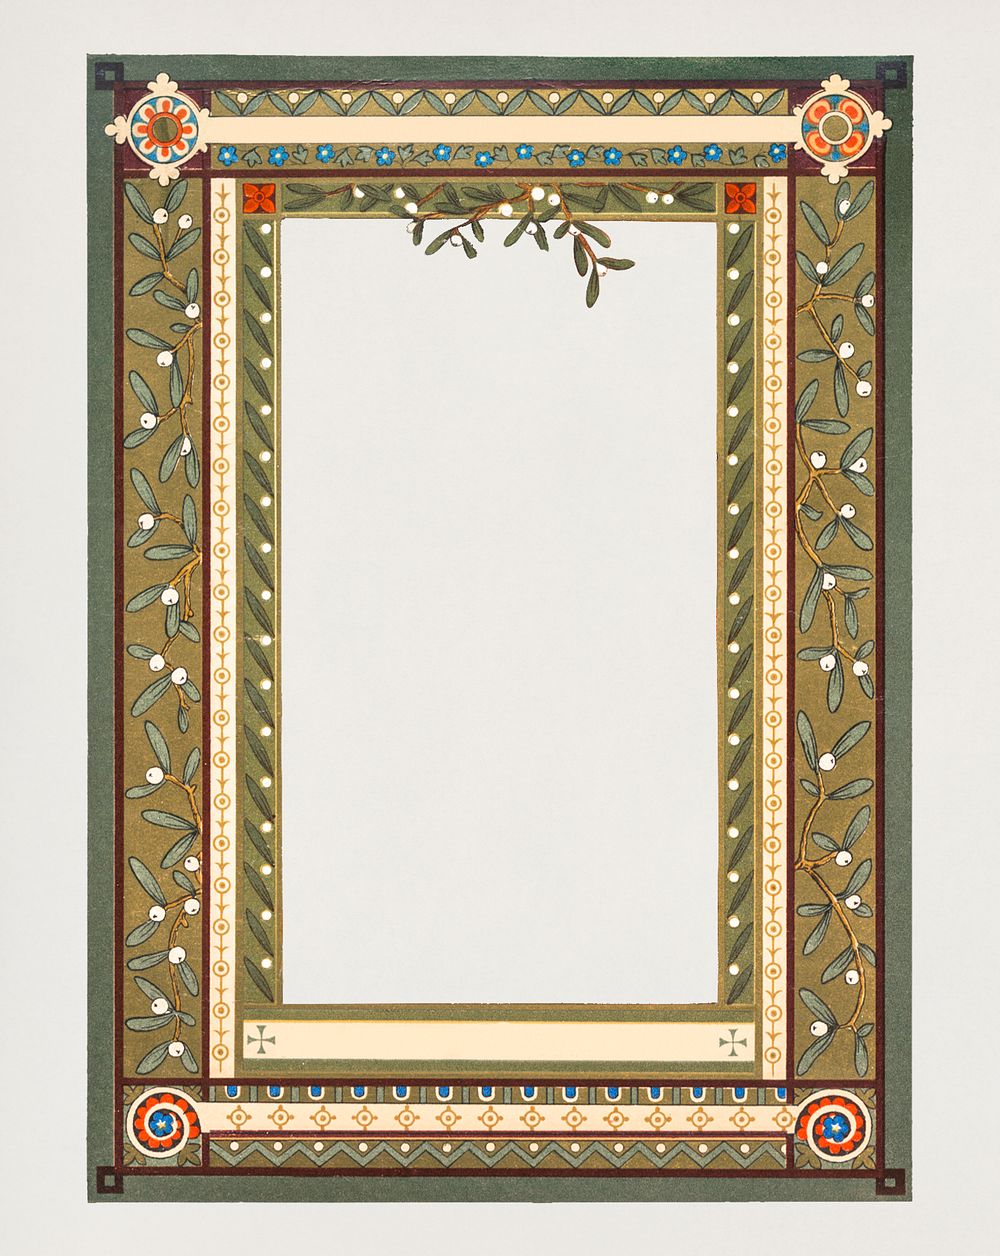 Blank leafy design frame illustration